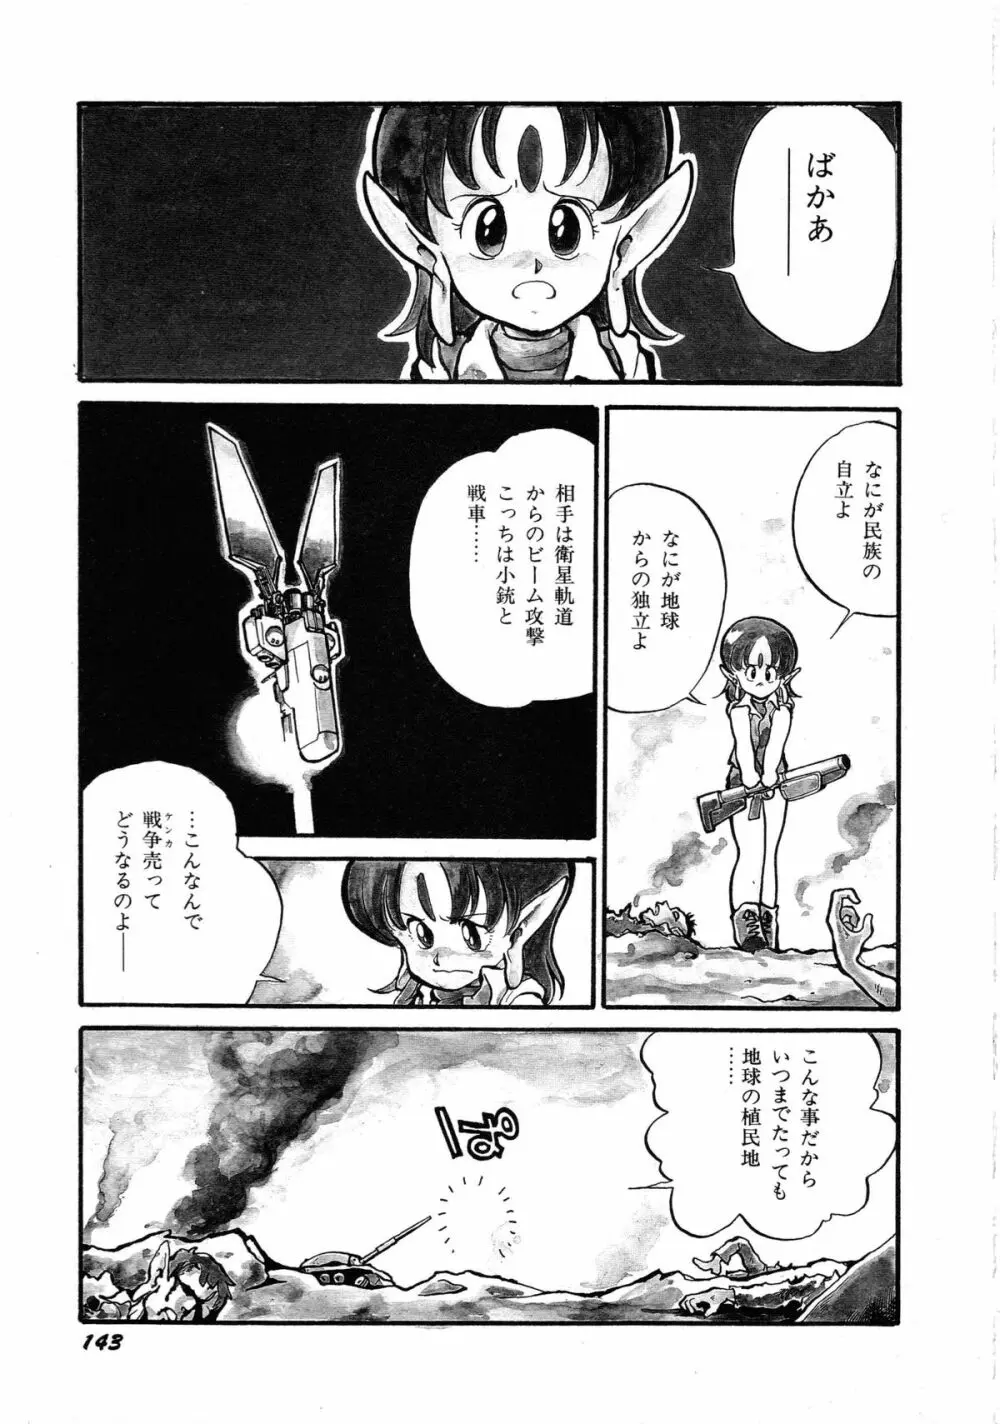 ロボット&美少女傑作選 レモン・ピープル1982-1986 147ページ